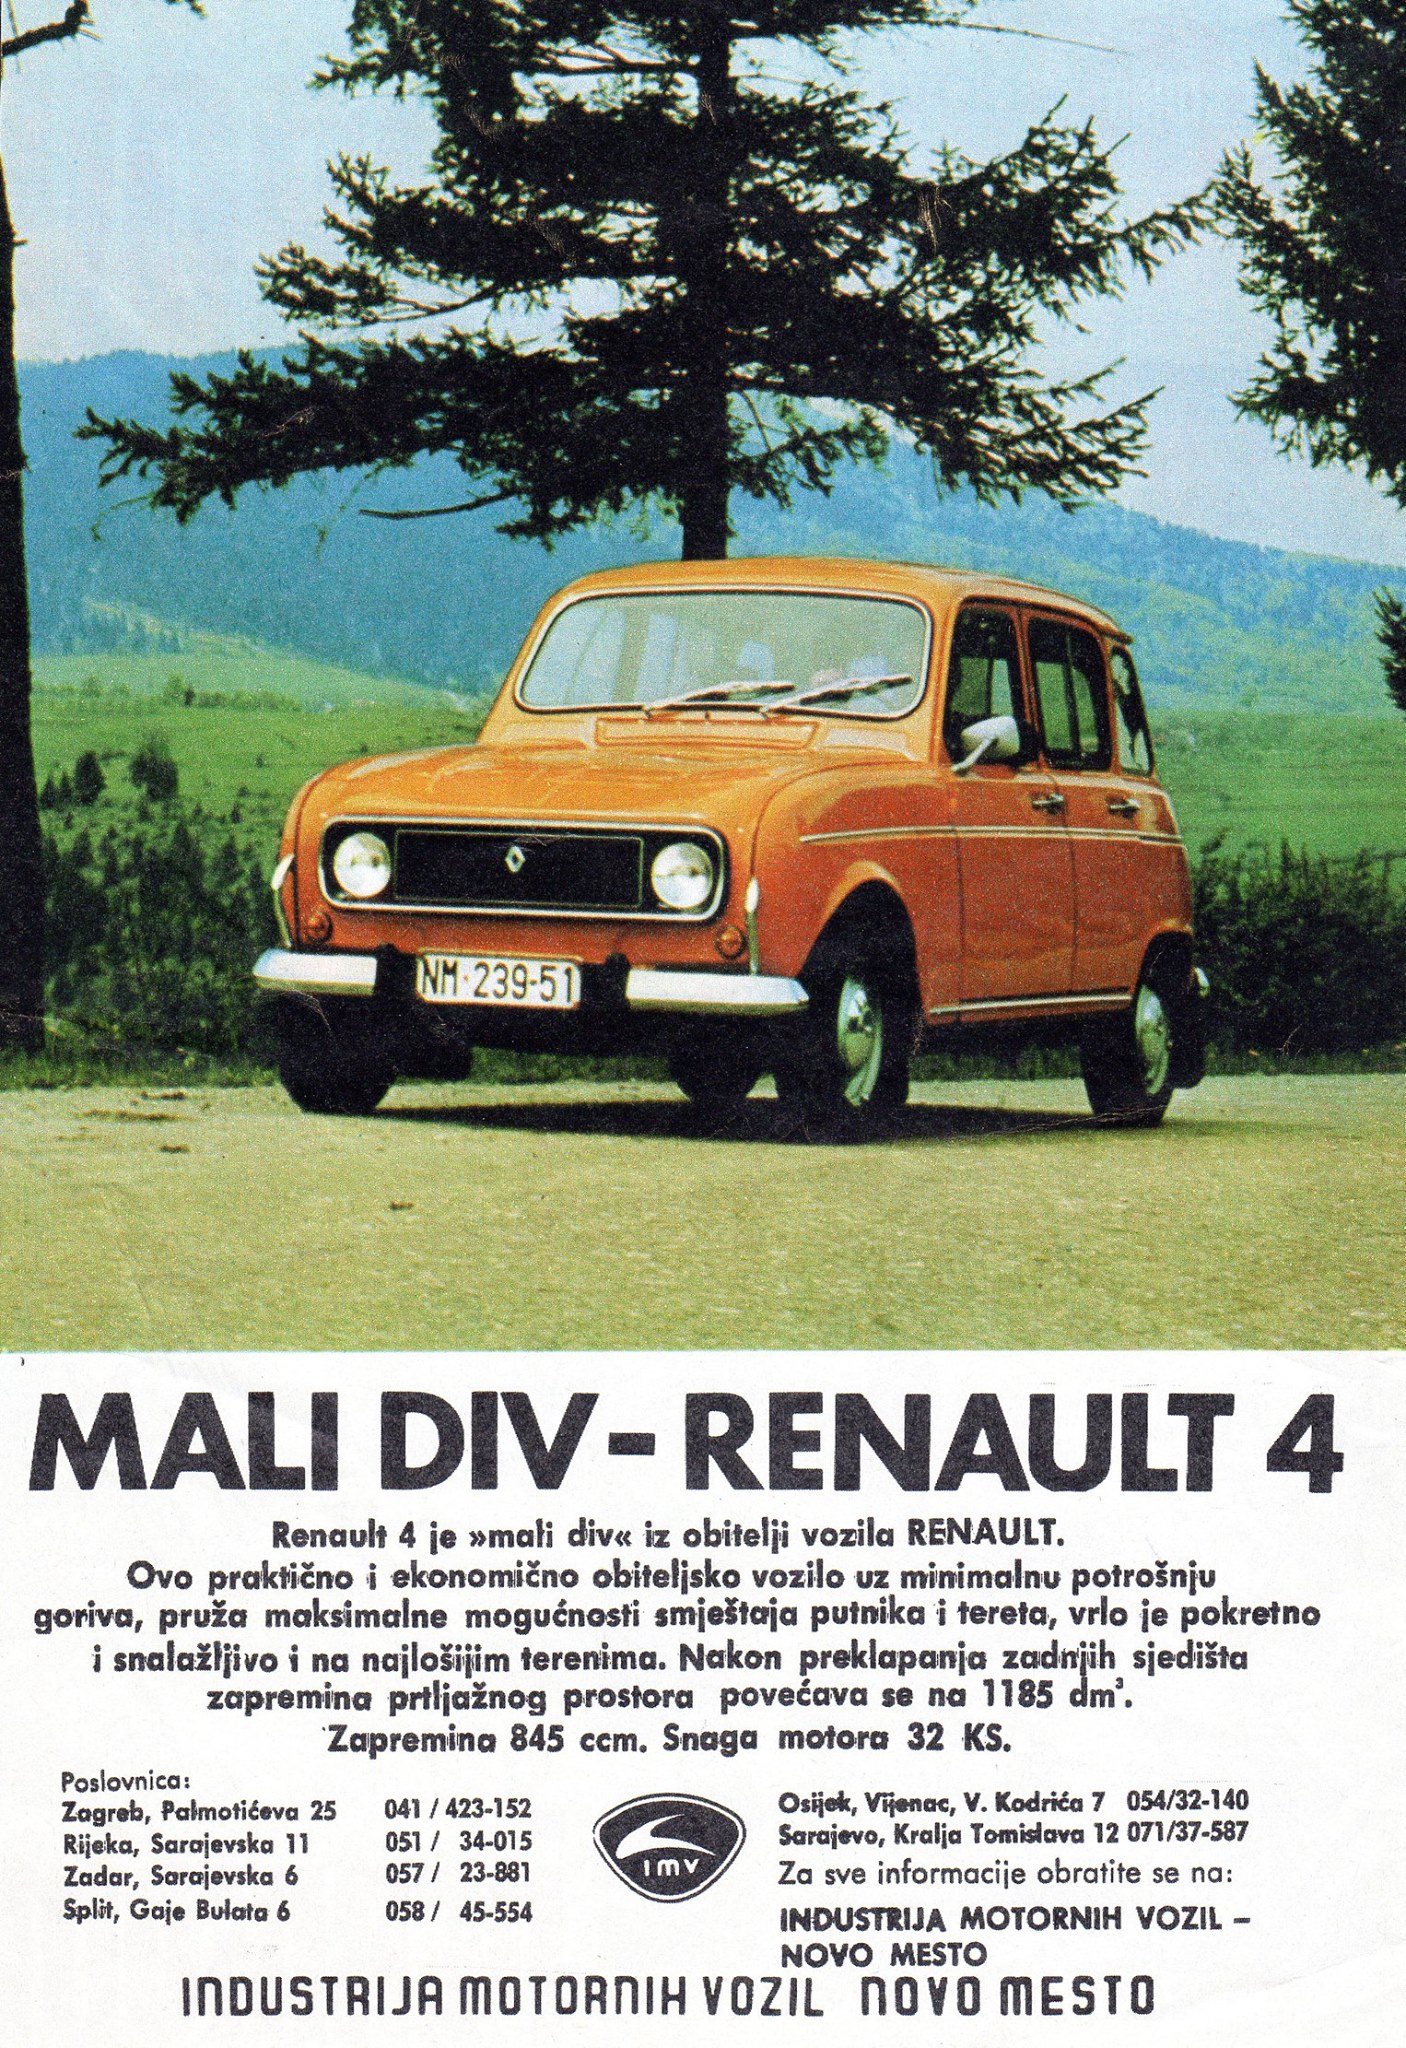 Renault 4 se proizvodio od 1973. pa do 1992. u tvornici IMV u Novom Mestu u Sloveniji koja je danas u vlasništvu Renaulta. Radi se o automobilu koji je bio česta pojava na cestama Jugoslavije. U Sloveniji je proizvedeno 575.960 Renaulta.